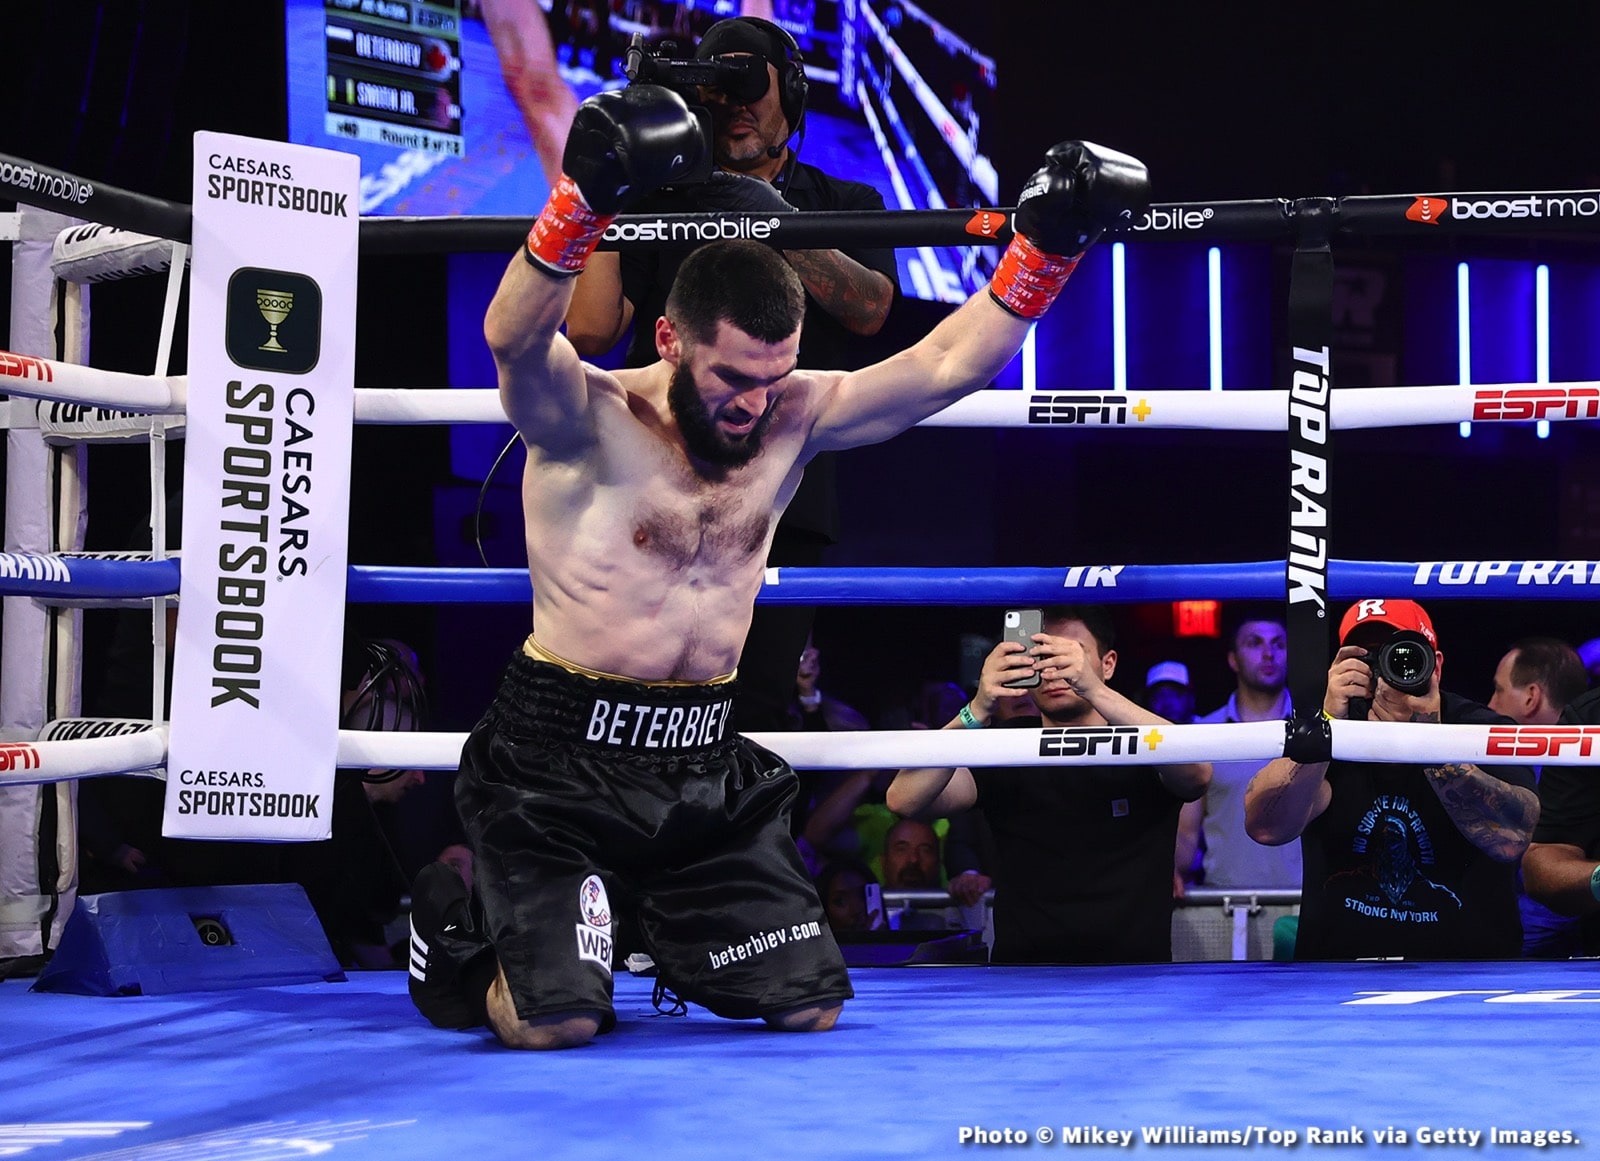 Robeisy Ramirez boxing image / photo